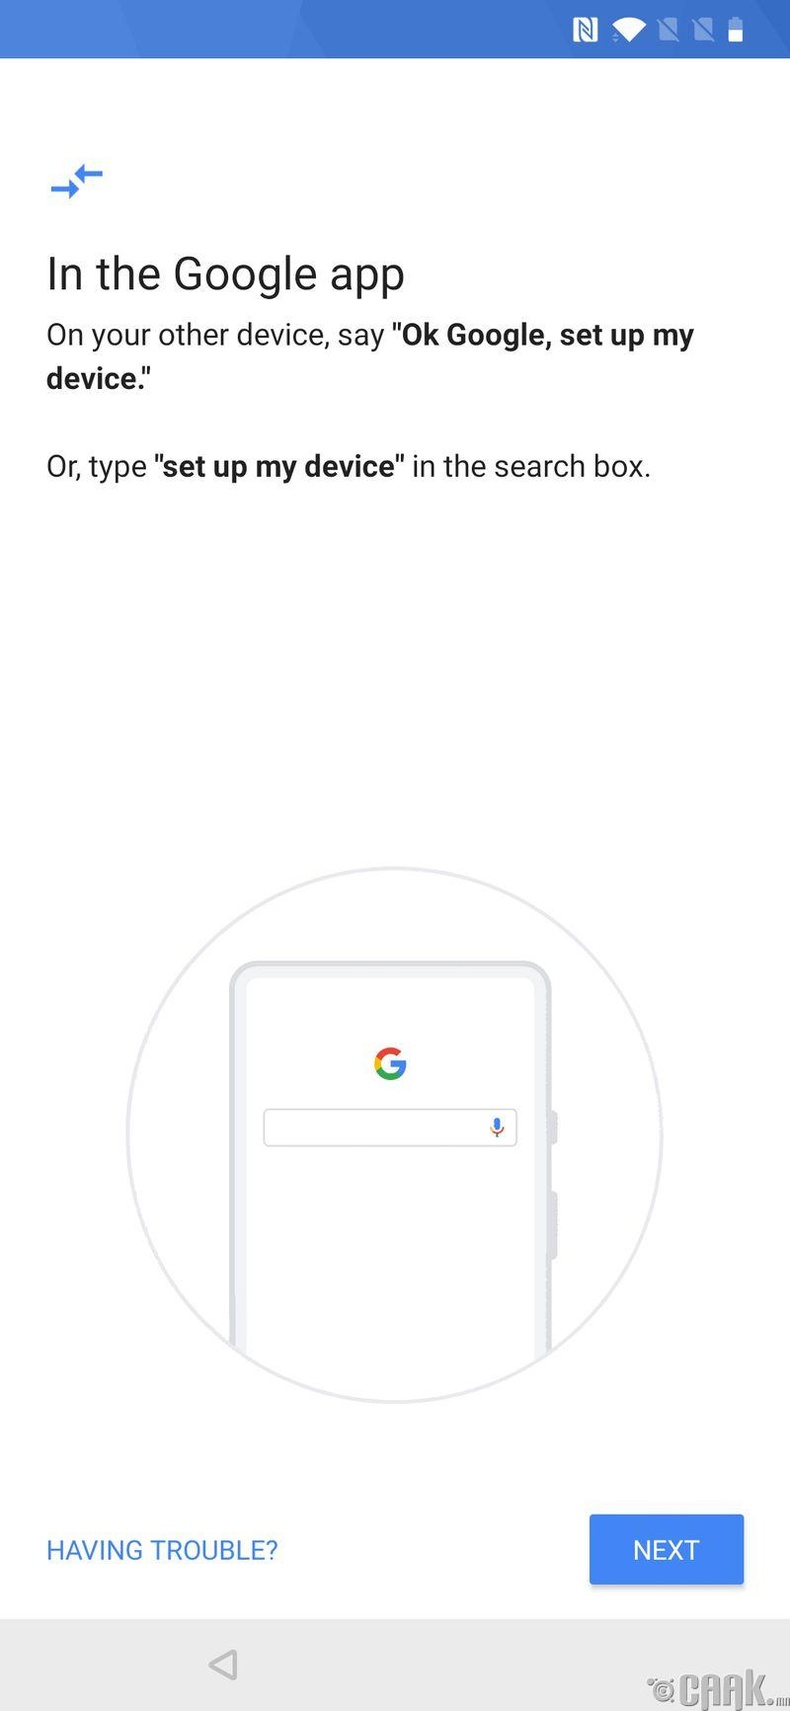 3. Хуучин утасныхаа "Google app"-ыг нээгээд "Set up my device" гэж хайлтын хэсэгт бичнэ